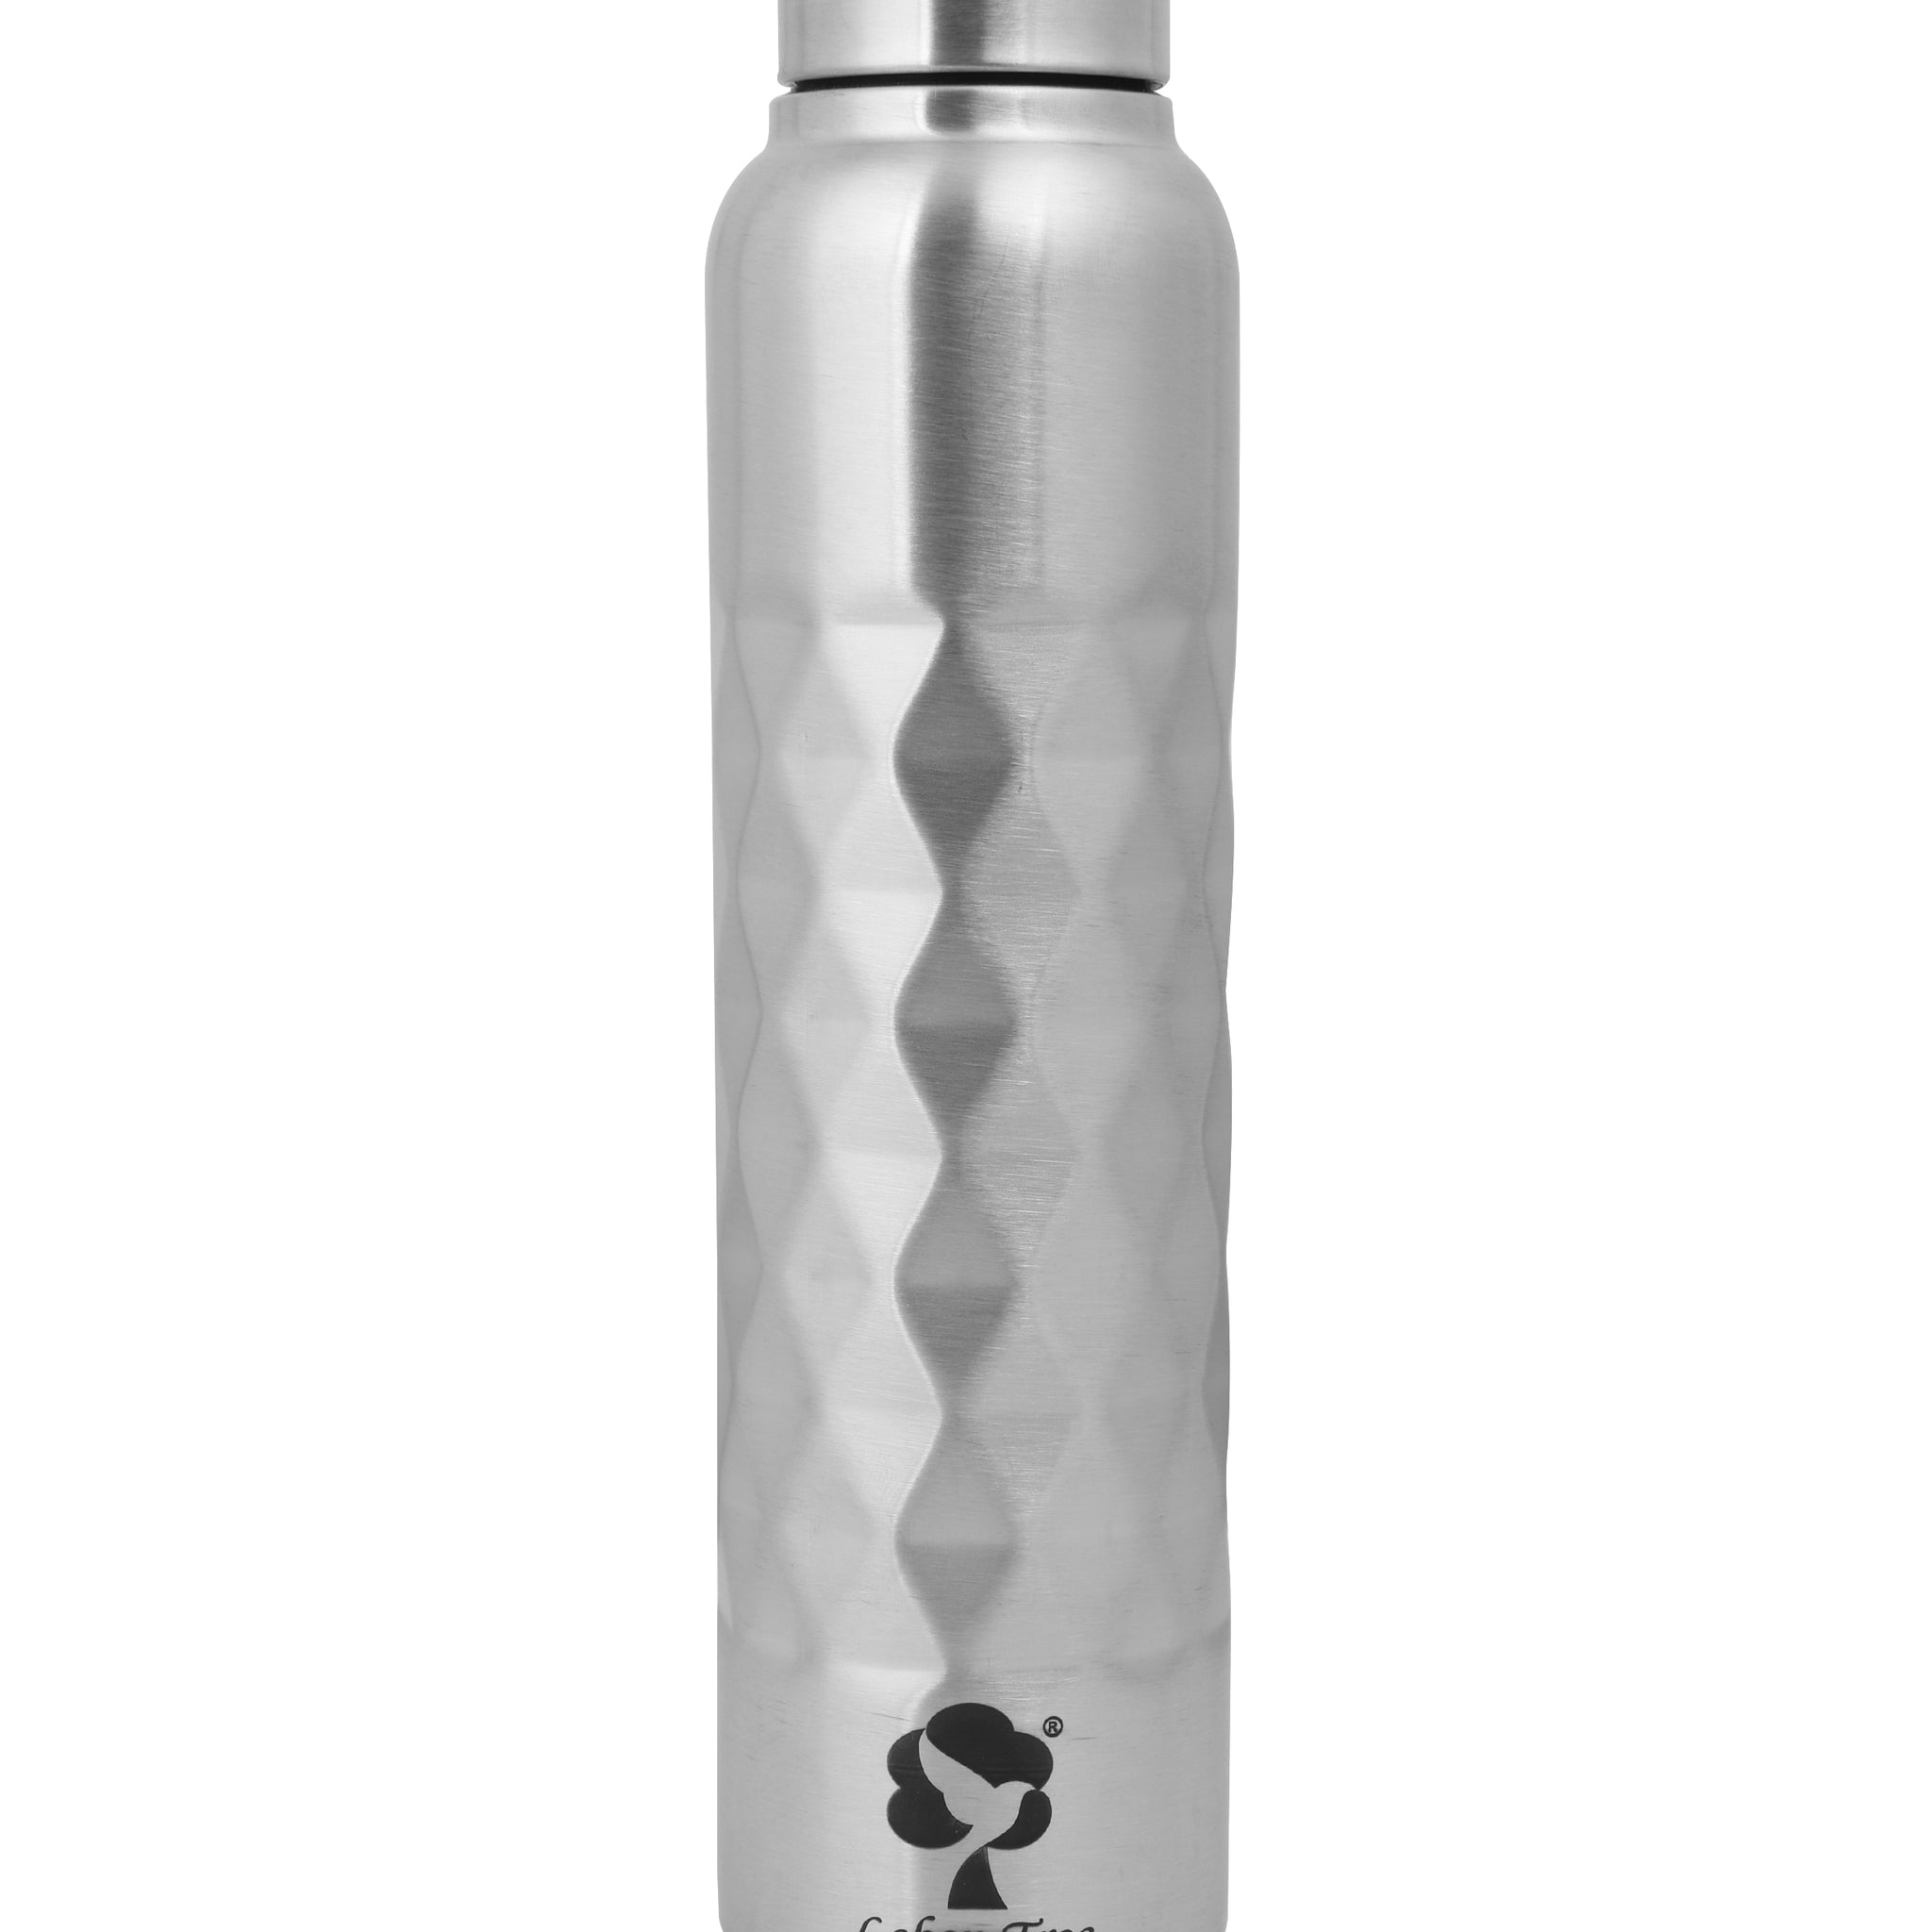 Leben Tree Cubix Stainless Steel Single Wall Water Bottle 1000 ml Bottle